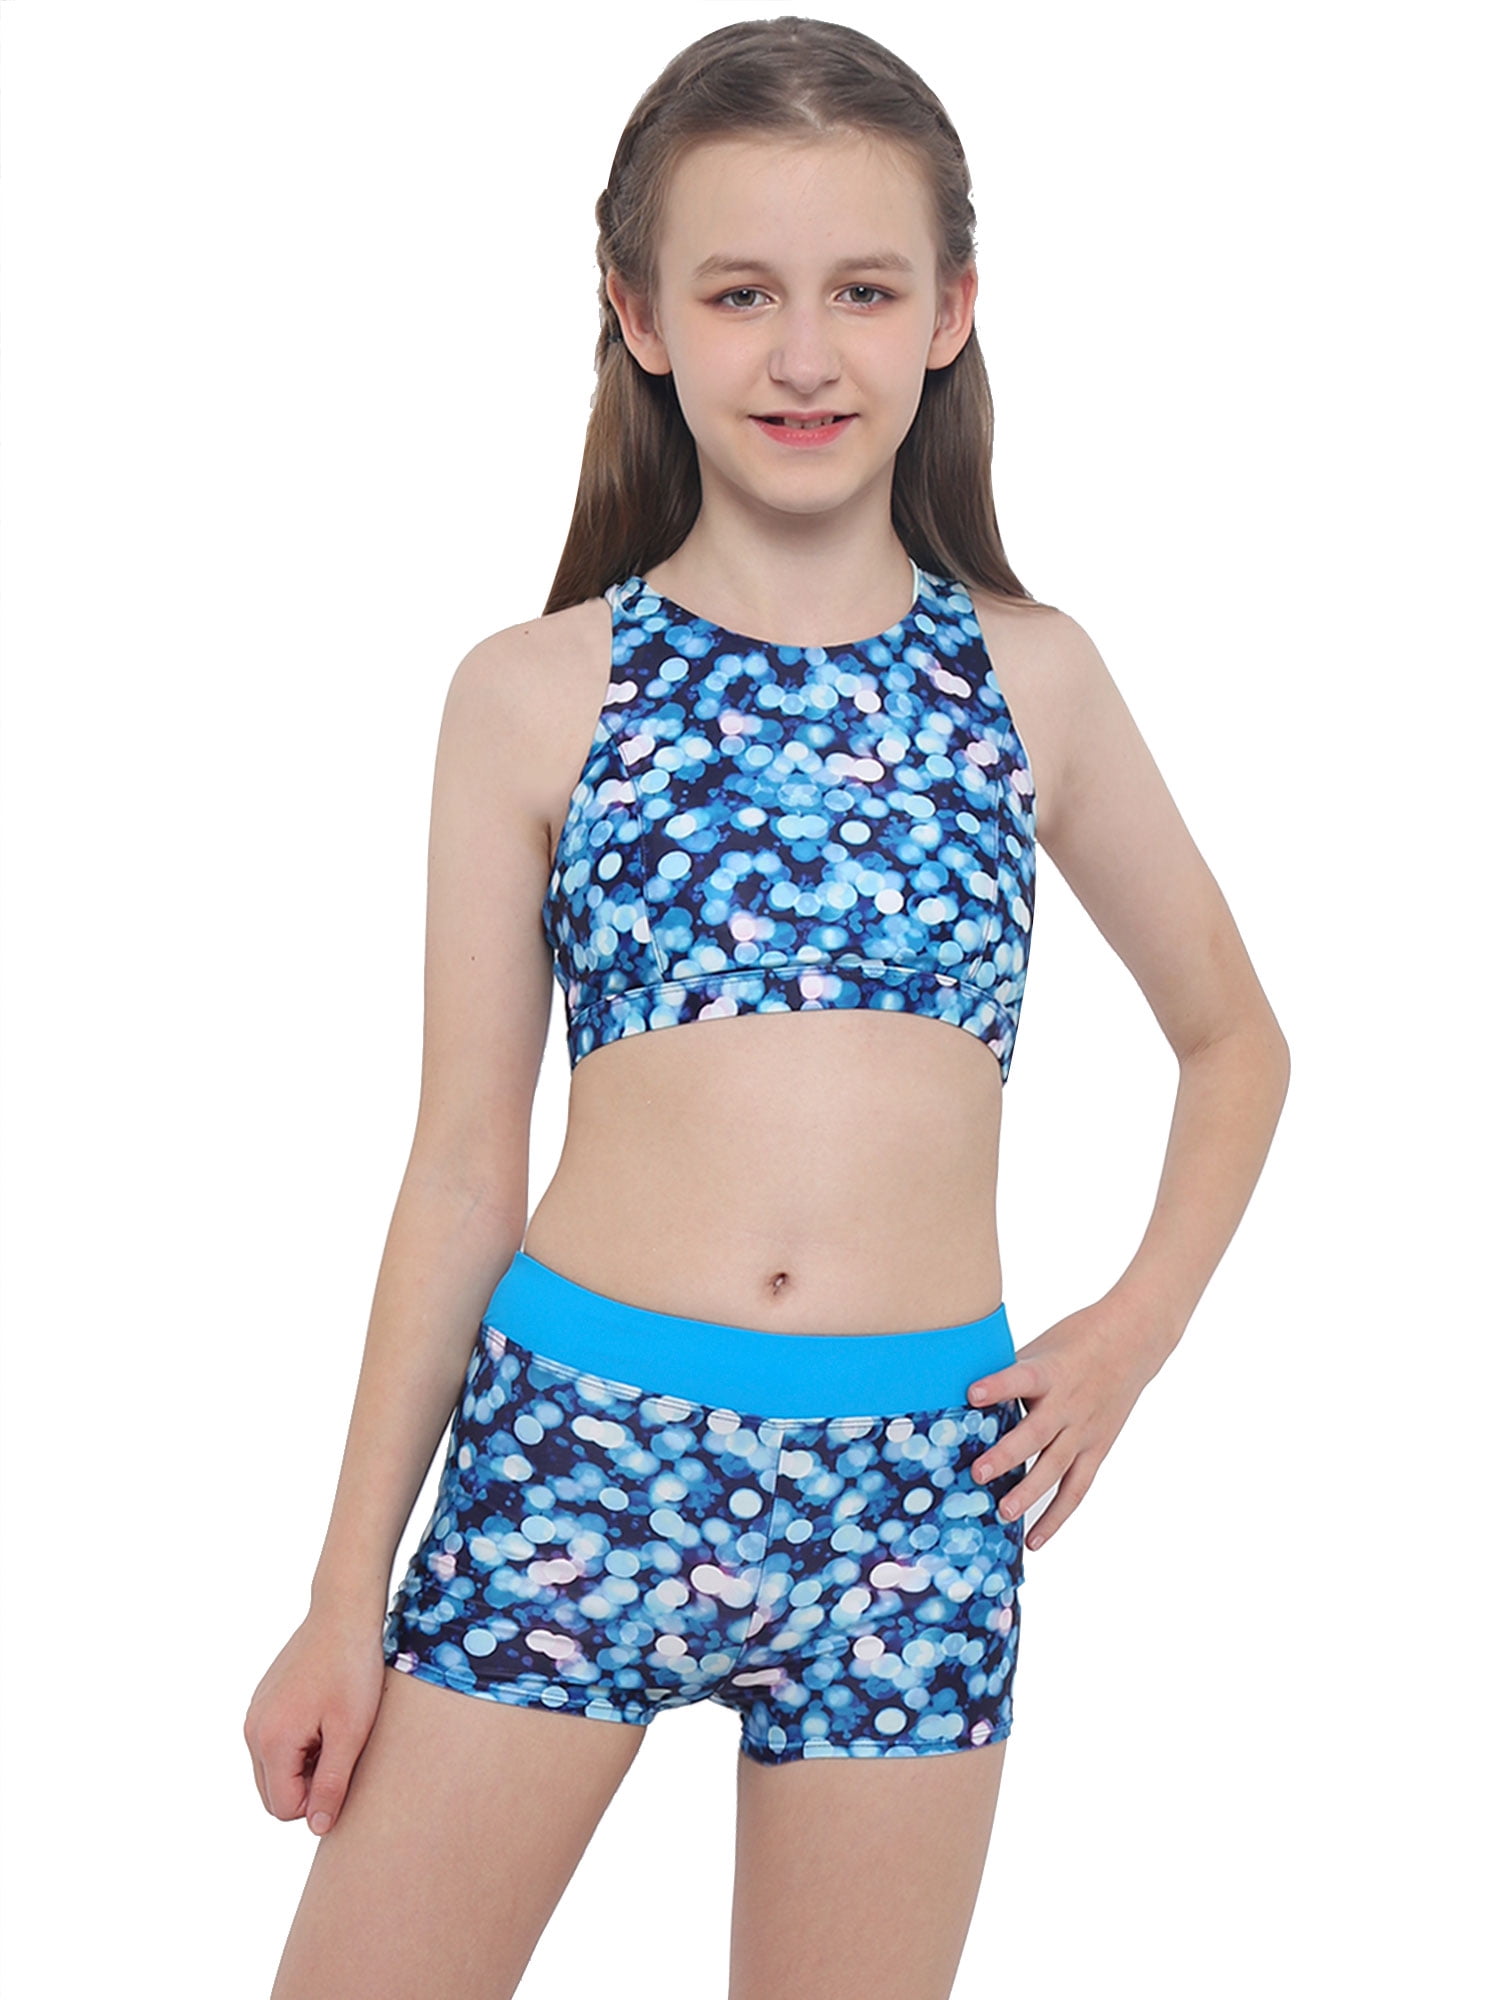 shorts Bathing Suit 2PCS Kids Toddler Girls Tankini Swimsuit Swimwear Crop top